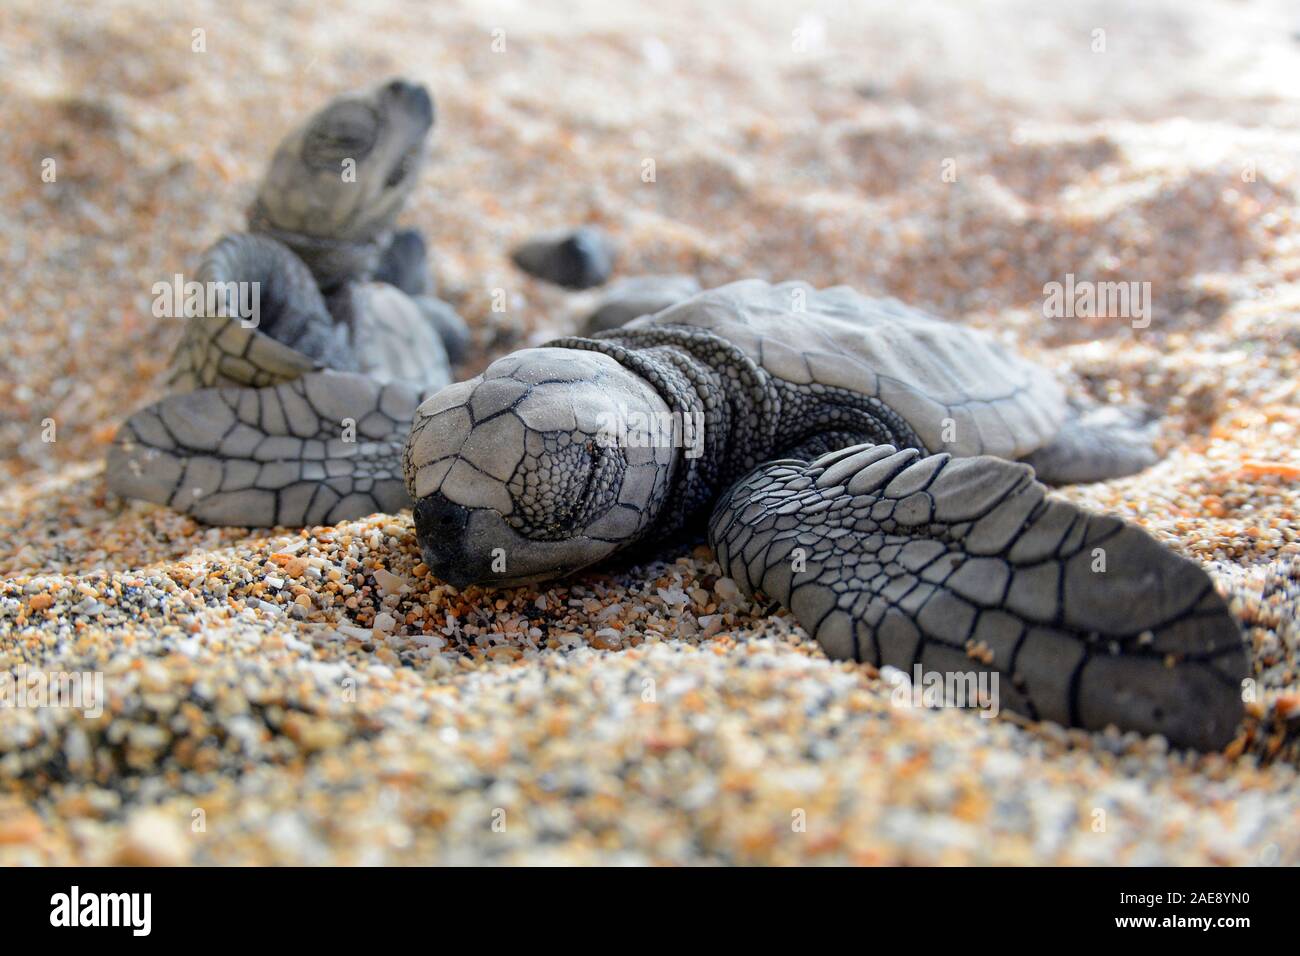 Grüne Meeresschildkröte, Chelonia mydas. Hatchling" Schildkröten Kampf der Oberfläche des Sandes zu erreichen, Bali, Indonesien. Stockfoto